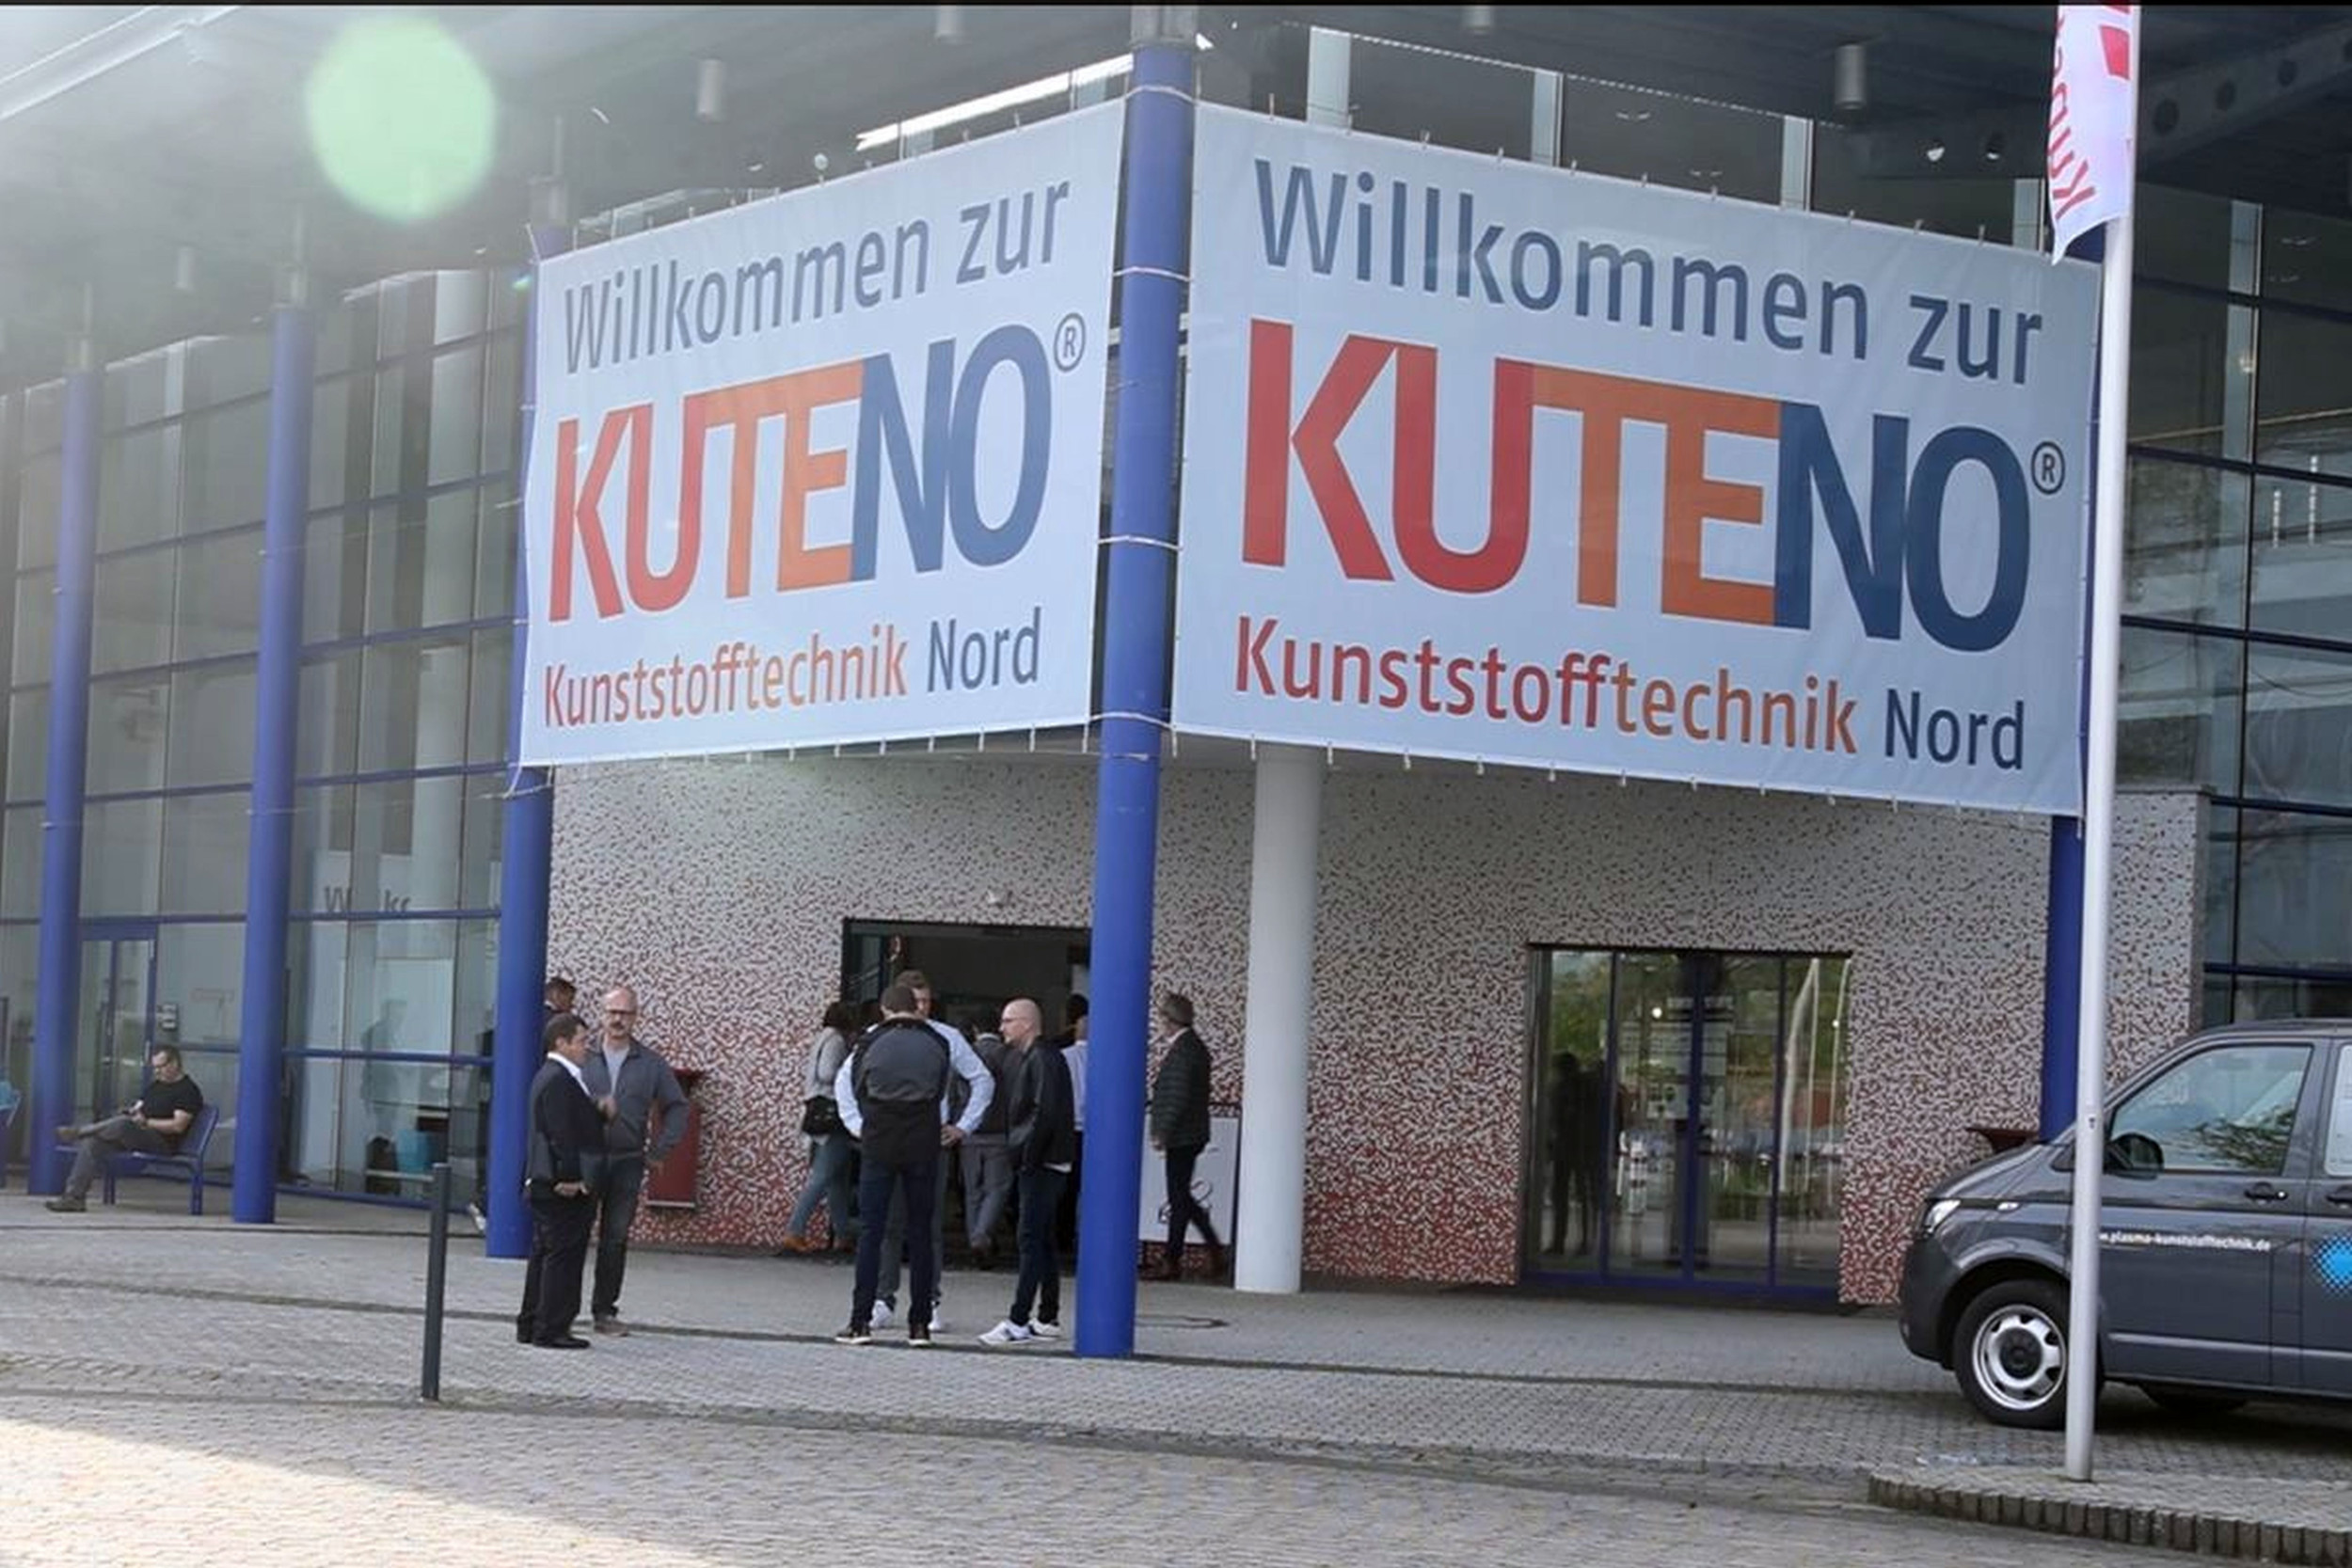 Die Messe Kuteno (der Name steht für“Kunststofftechnik Nord“) in Rheda-Wiedenbrück hat sich im Norden im Termnkalender der Branche fest etabliert. Das Branchenforum der Kunststoffverarbeiter zeigt Neuheiten und Trends in dieser Schlüsselindustrie.